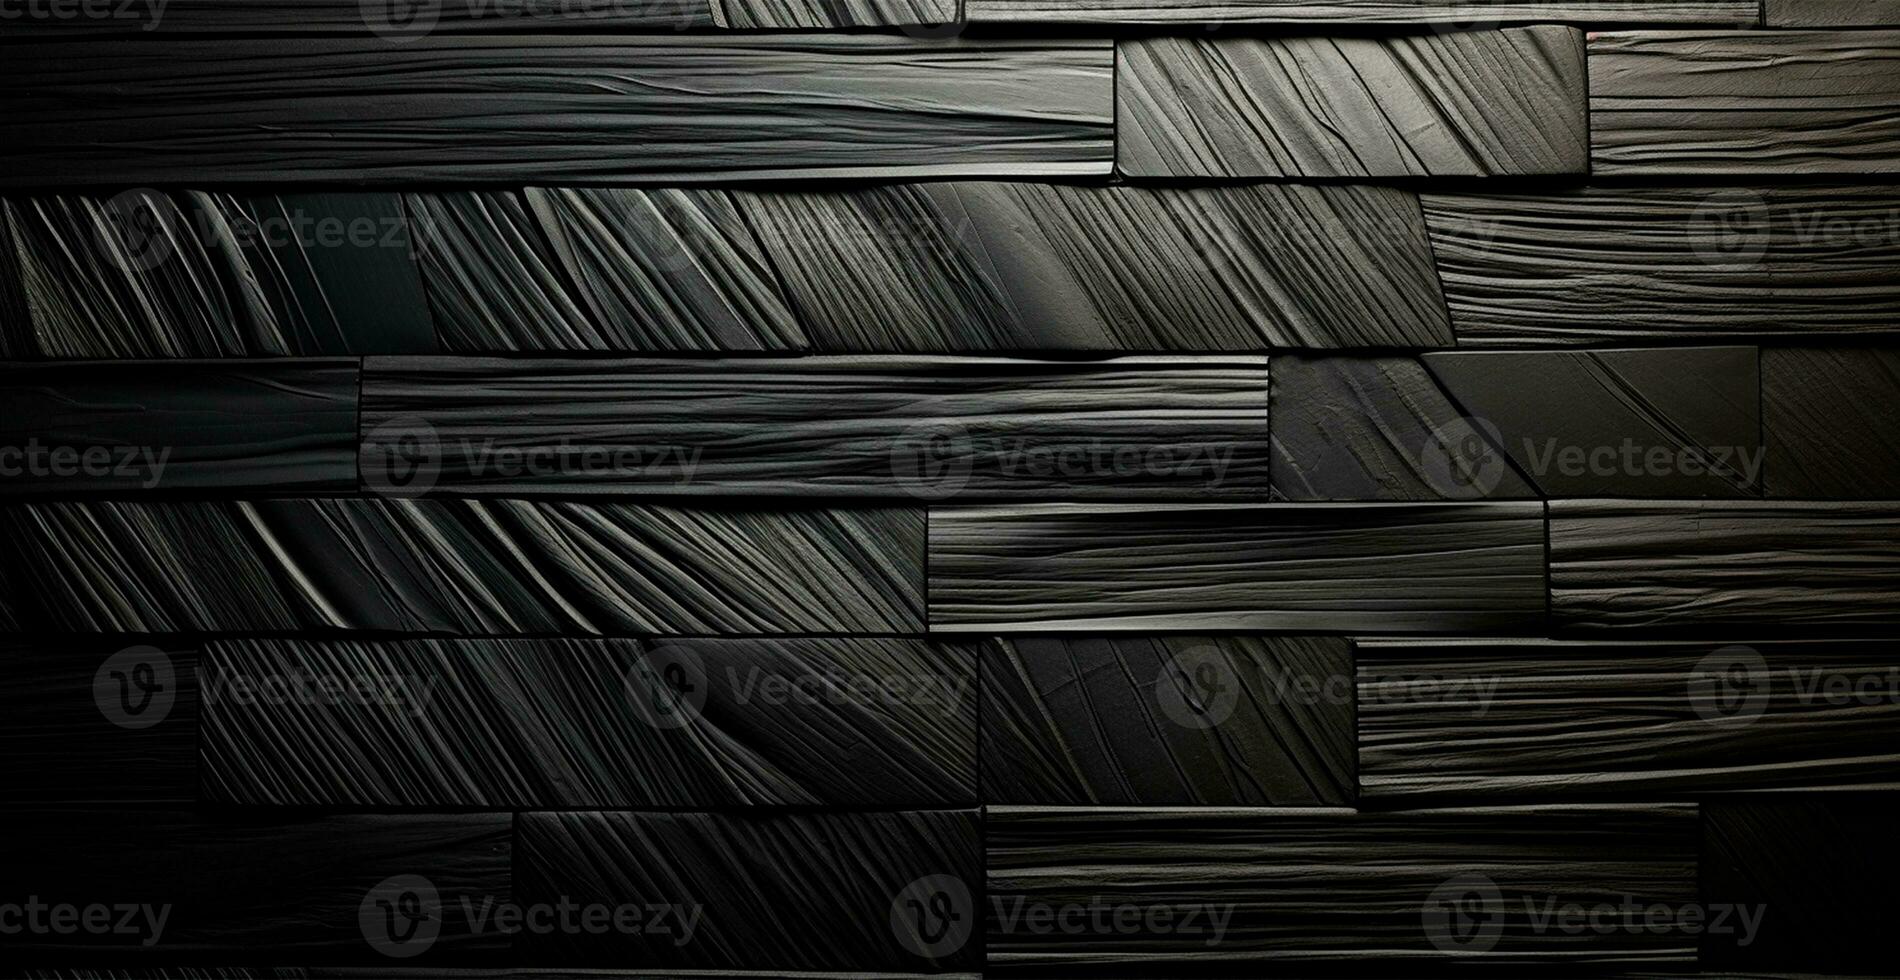 abstract zwart achtergrond, Rechtdoor lijnen verlichting - ai gegenereerd beeld foto